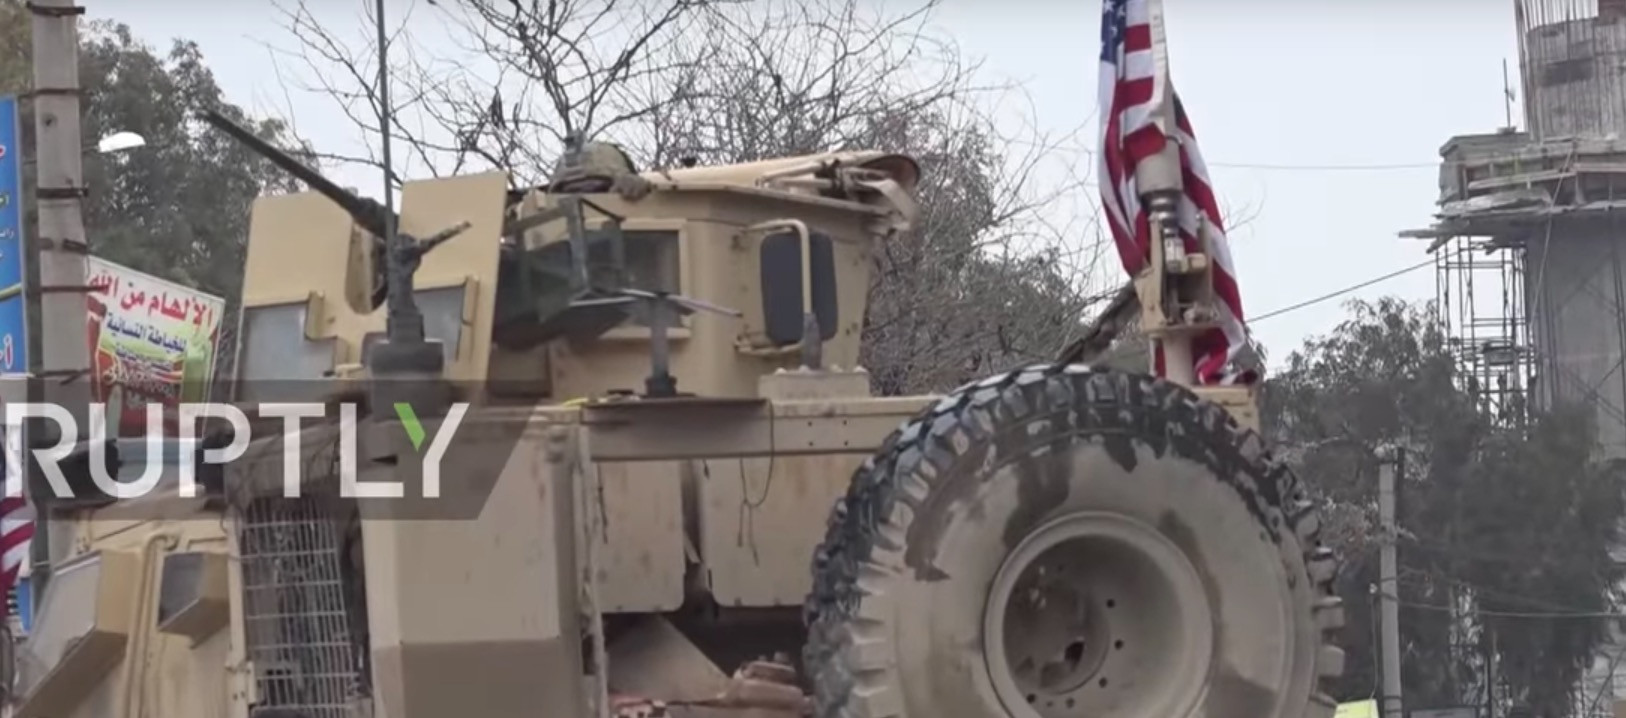 Συρία: Πολύνεκρη επίθεση αυτοκτονίας στο Μανμπίτζ – 4 Αμερικανοί στρατιώτες στα θύματα [Βίντεο]